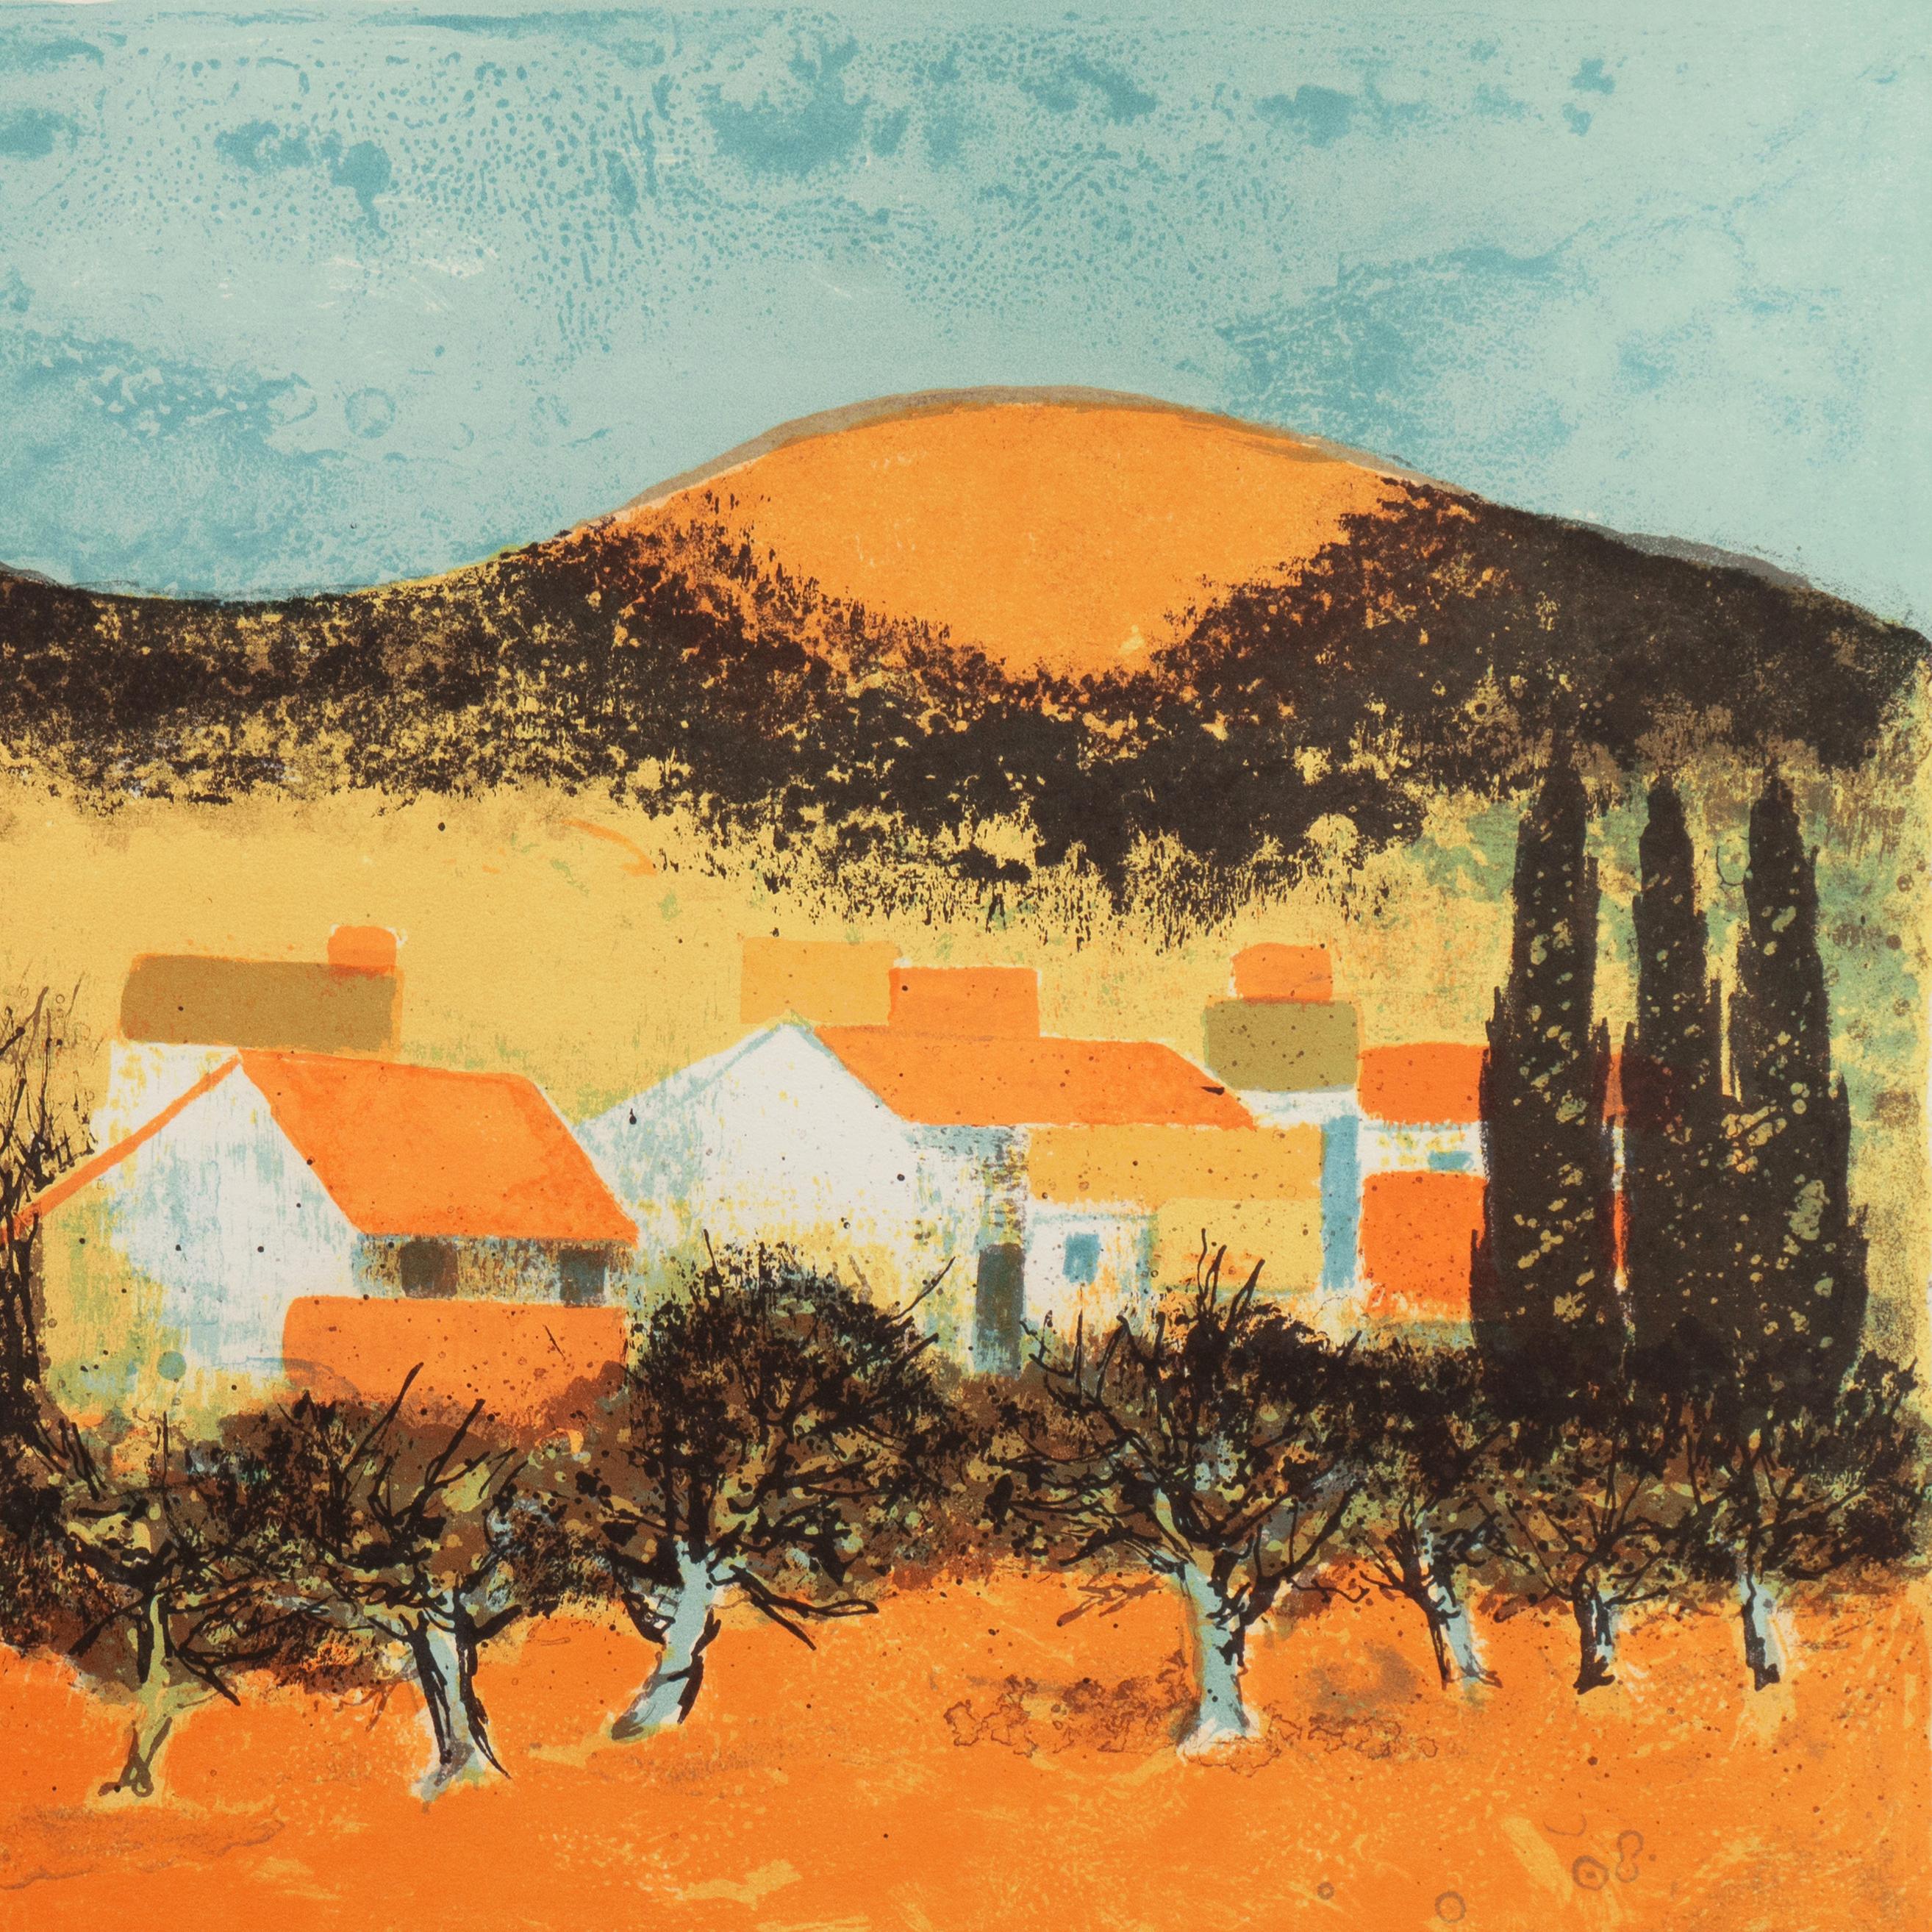 'Sunset over Provence', Paris Salon, Musée d'Art Moderne, Benezit - Post-Impressionist Print by Pierre Bisiaux